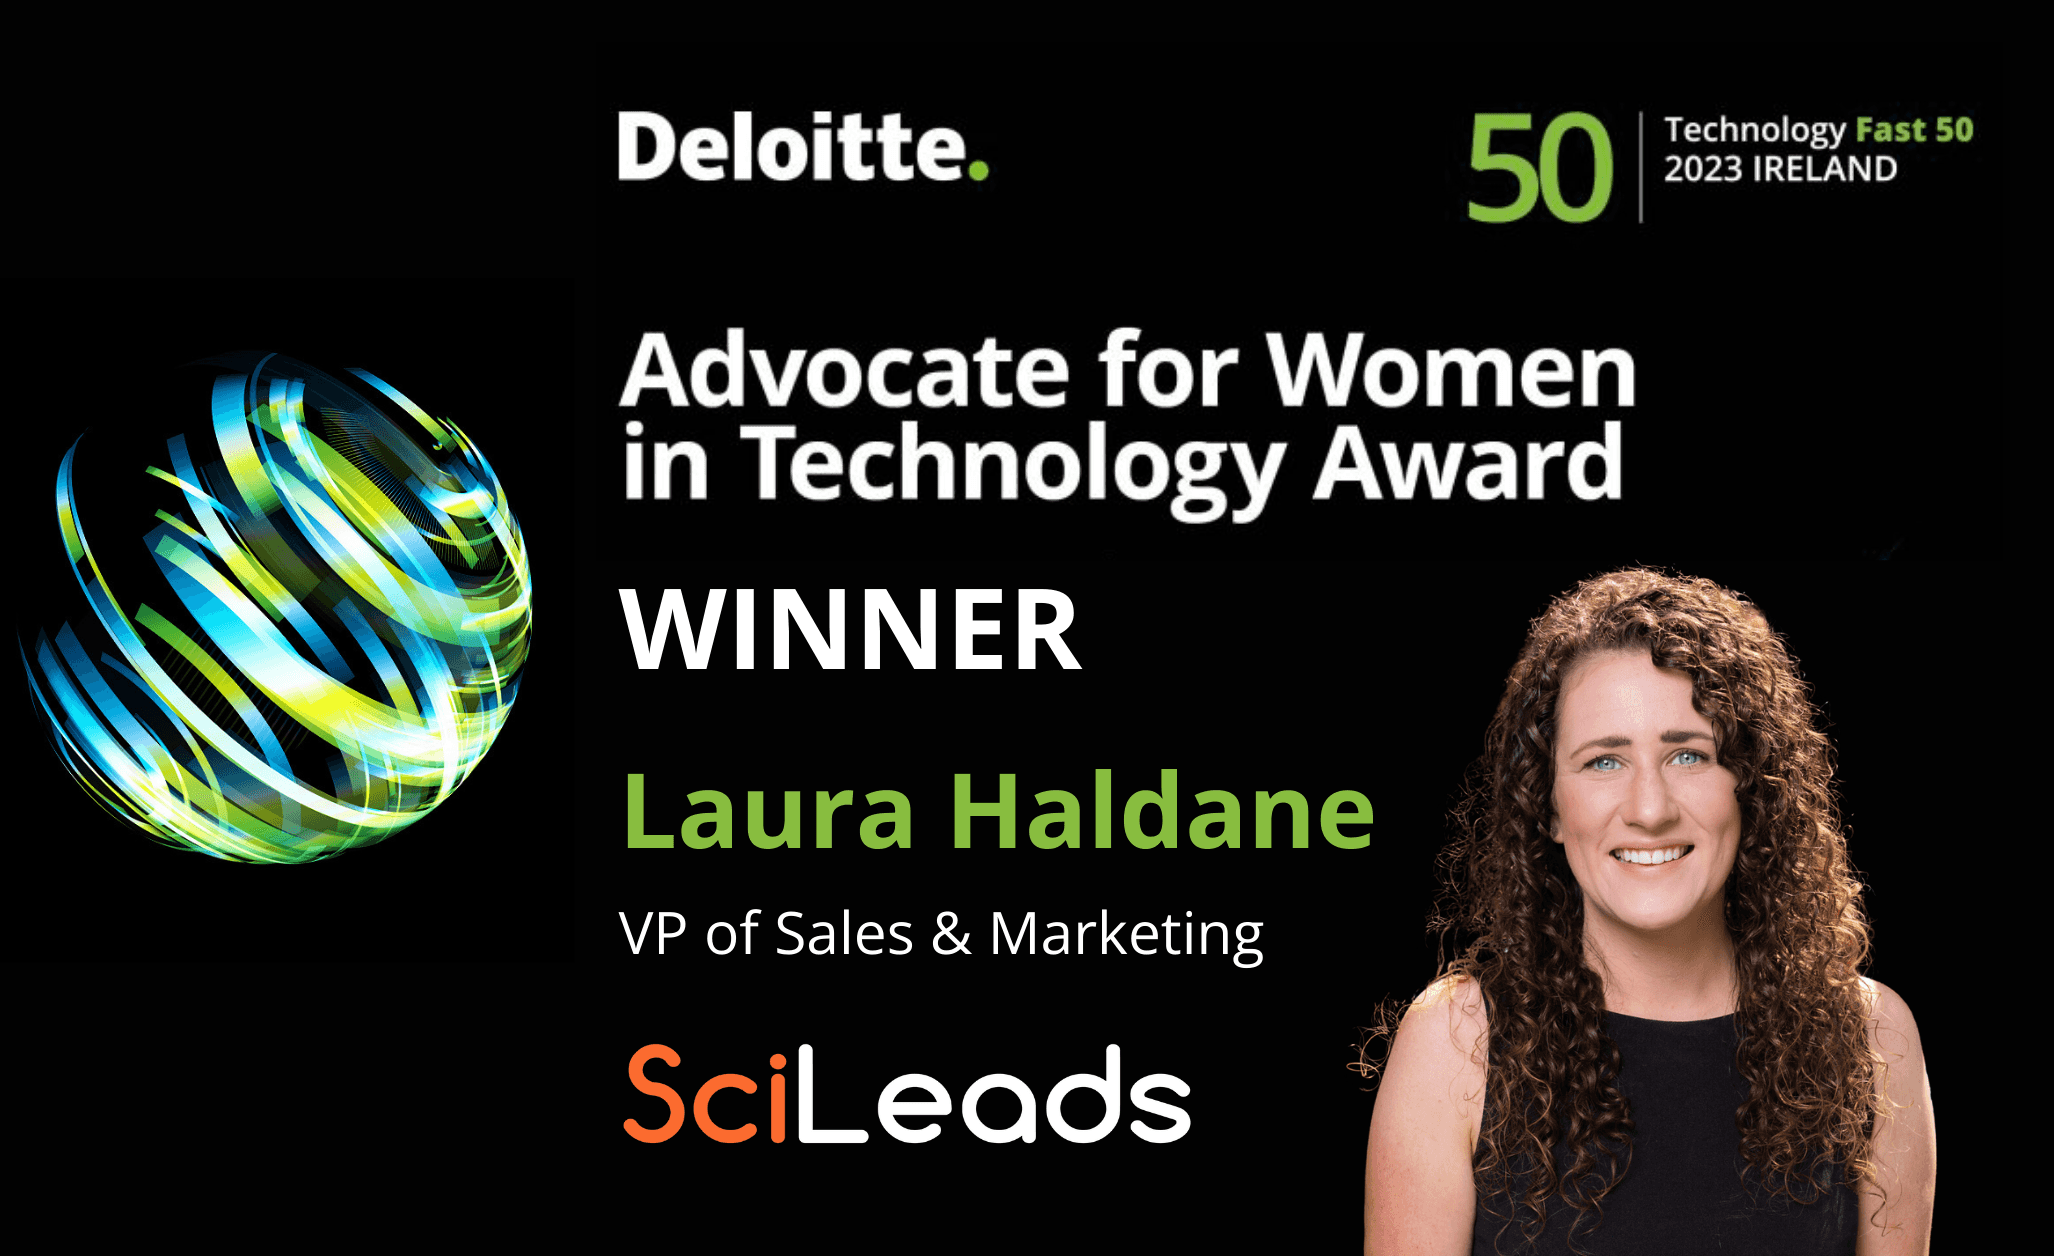 SciLeads’ Laura Haldane wins Advocate for Women in Technology Award